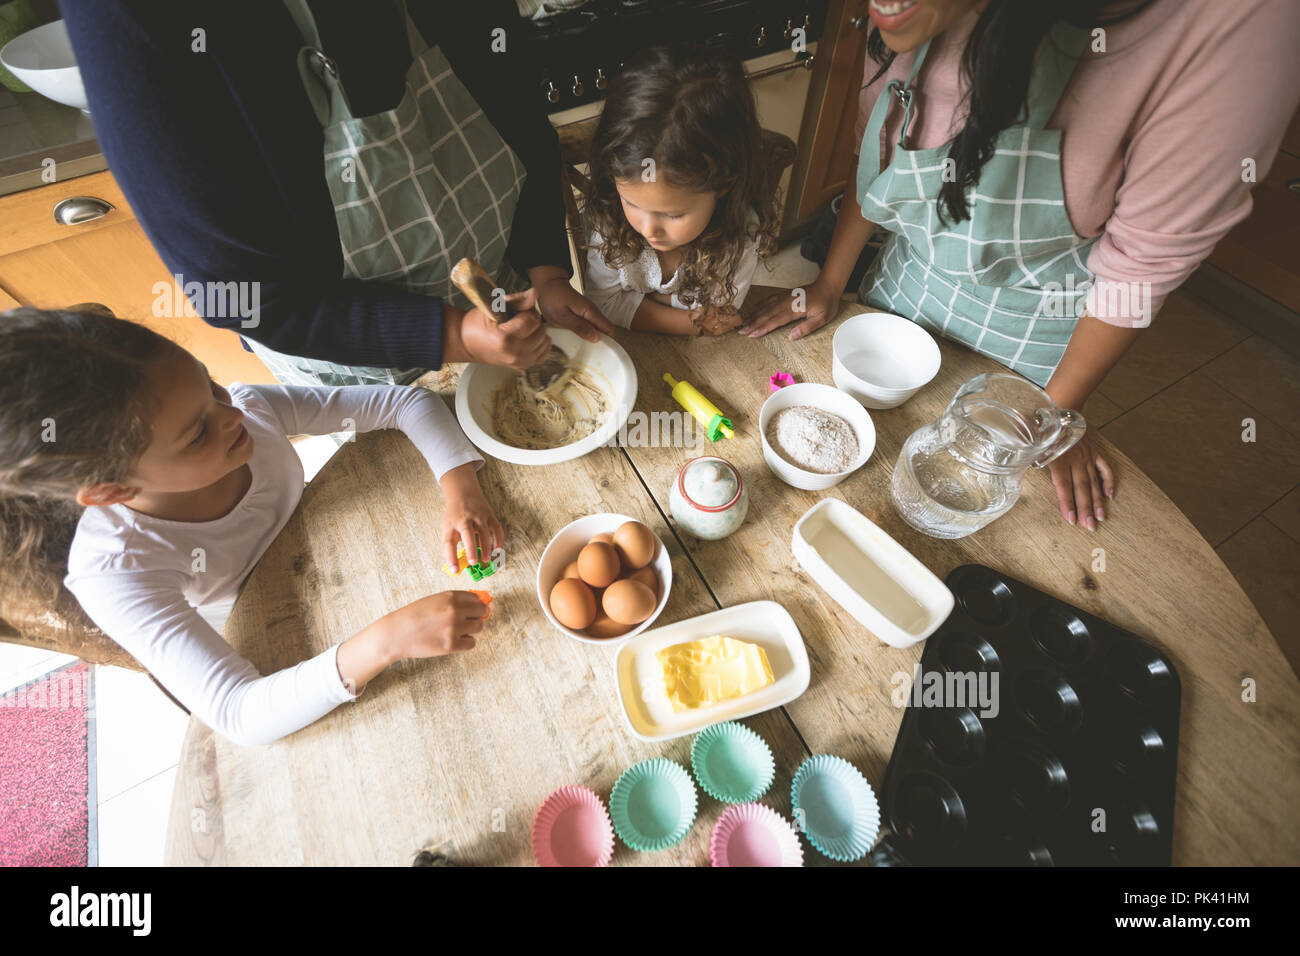 Famille préparer le petit-déjeuner sur une table à manger Banque D'Images